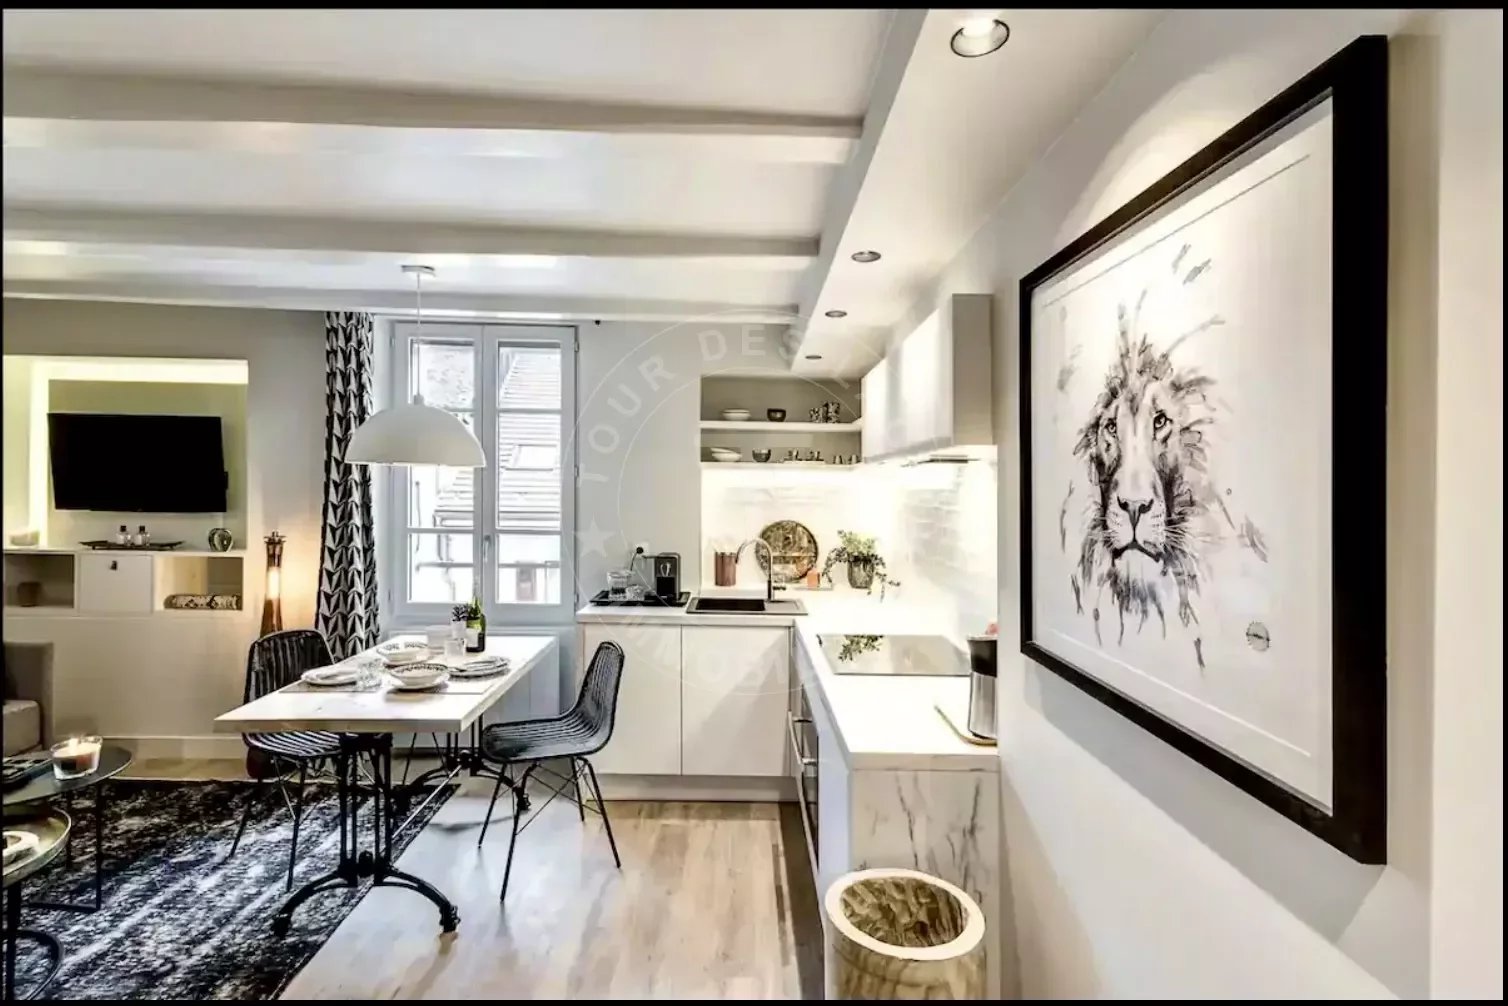 A vendre Type 2 - Annecy centre-ville, appartement refait à neuf